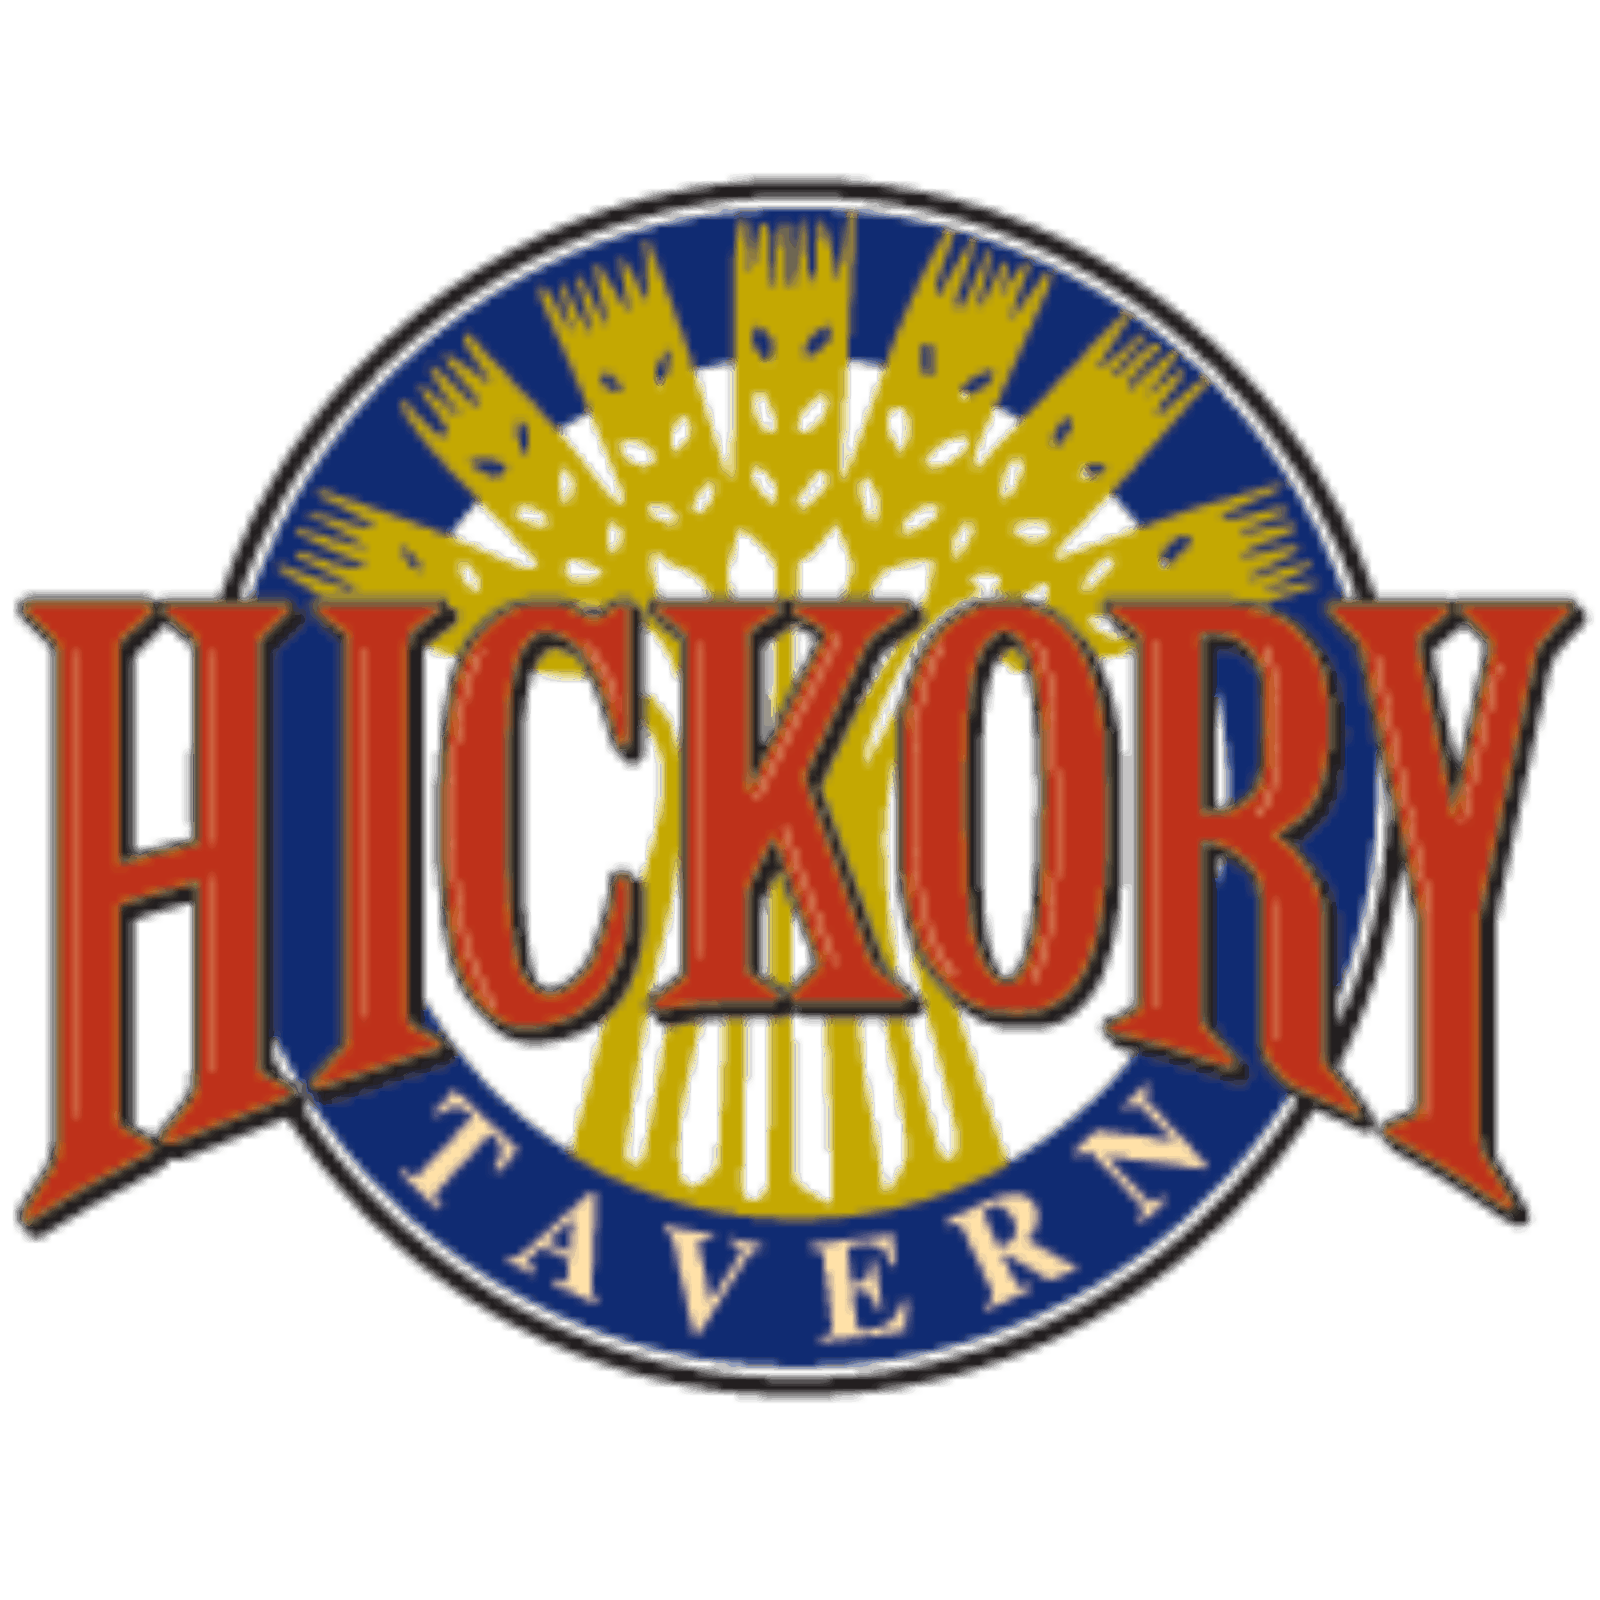 Hickory Tavern Logo